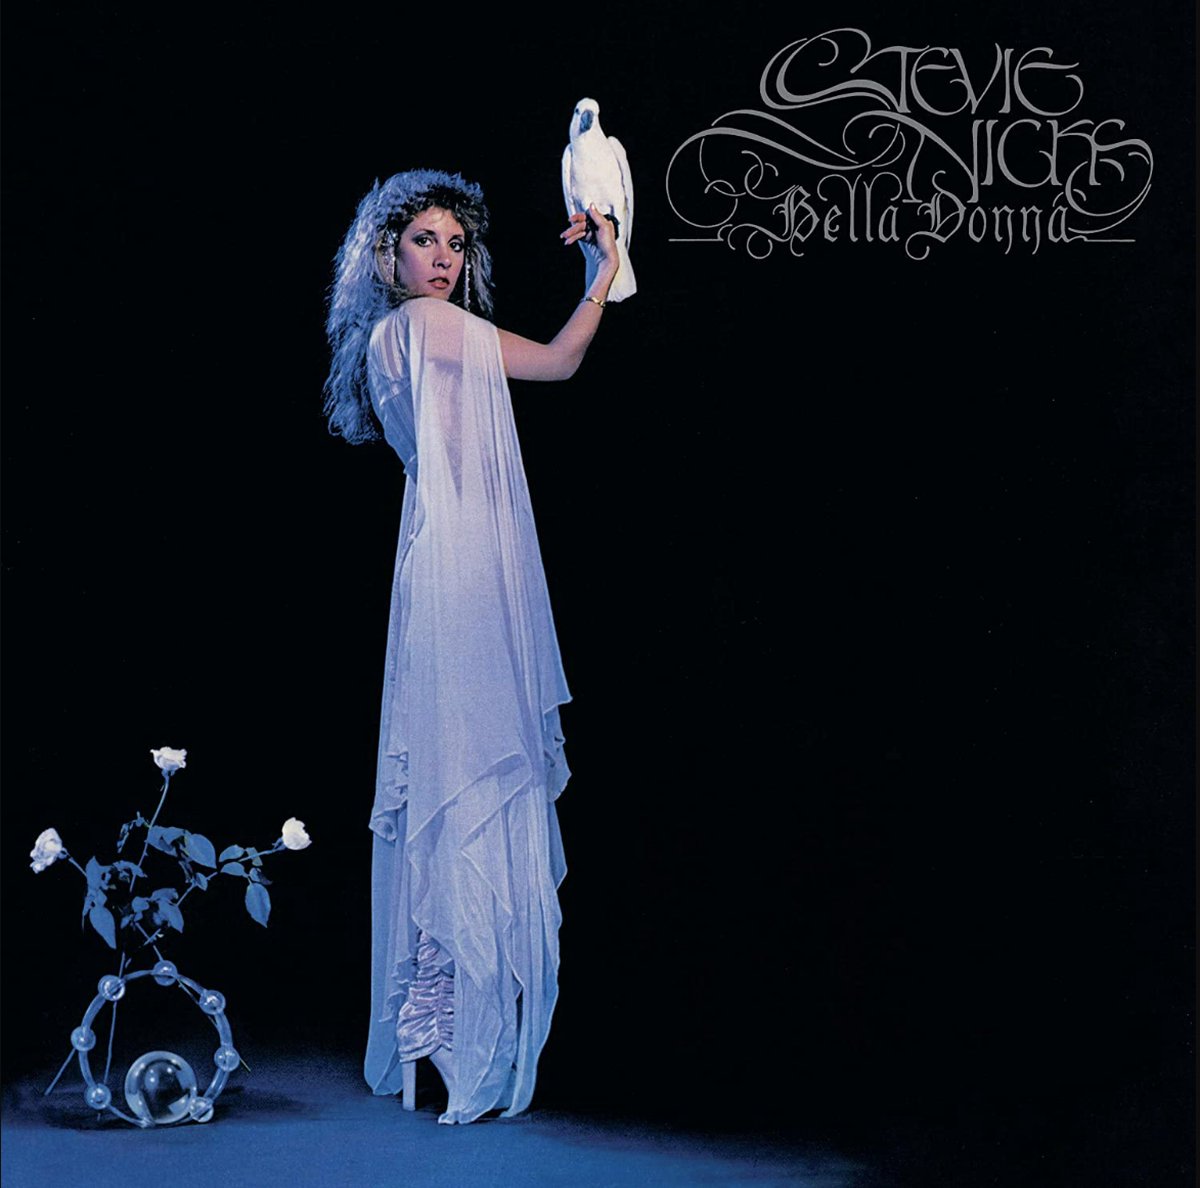 Stevie Nicks - Bella Donna (LP)